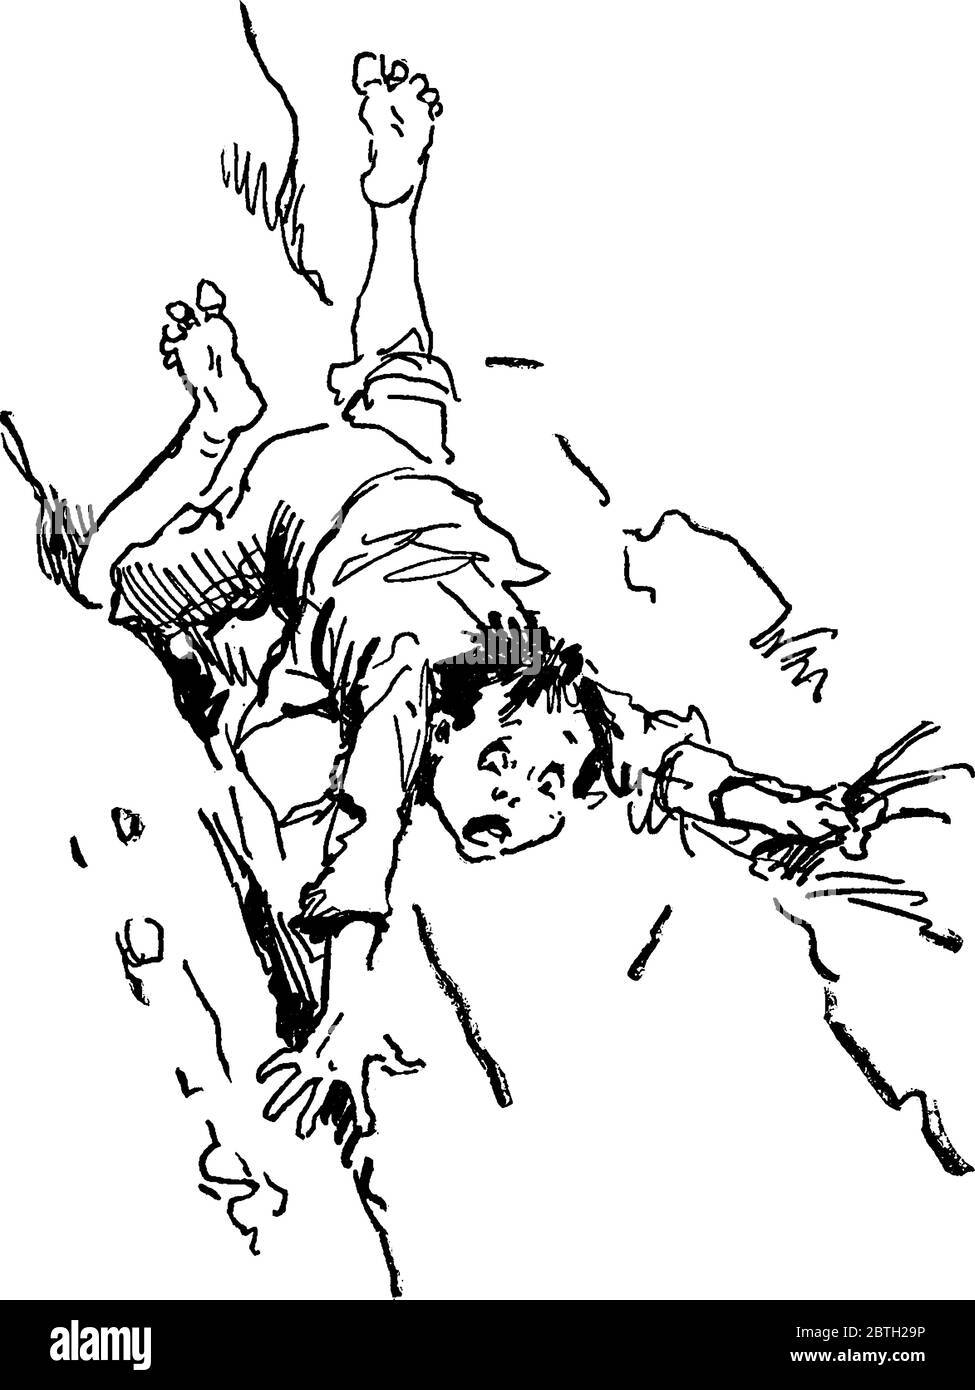 Un petit garçon pieds nus, qui se dégringolent et tombe sur une colline, dessin de ligne vintage ou illustration de gravure Illustration de Vecteur